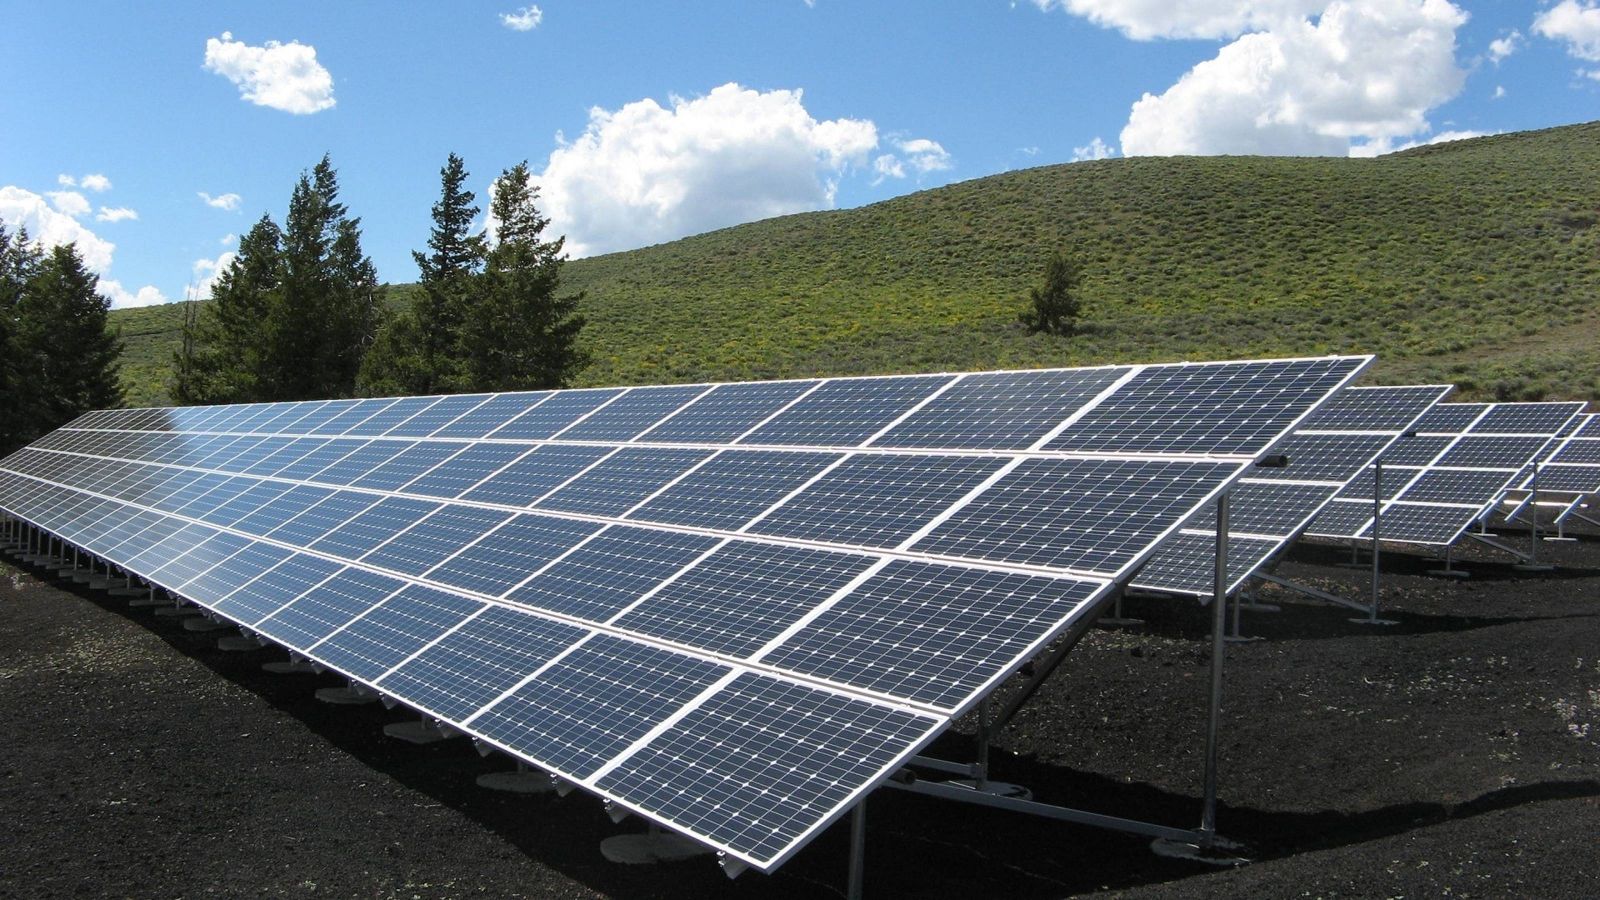 Solar panels on hillside 